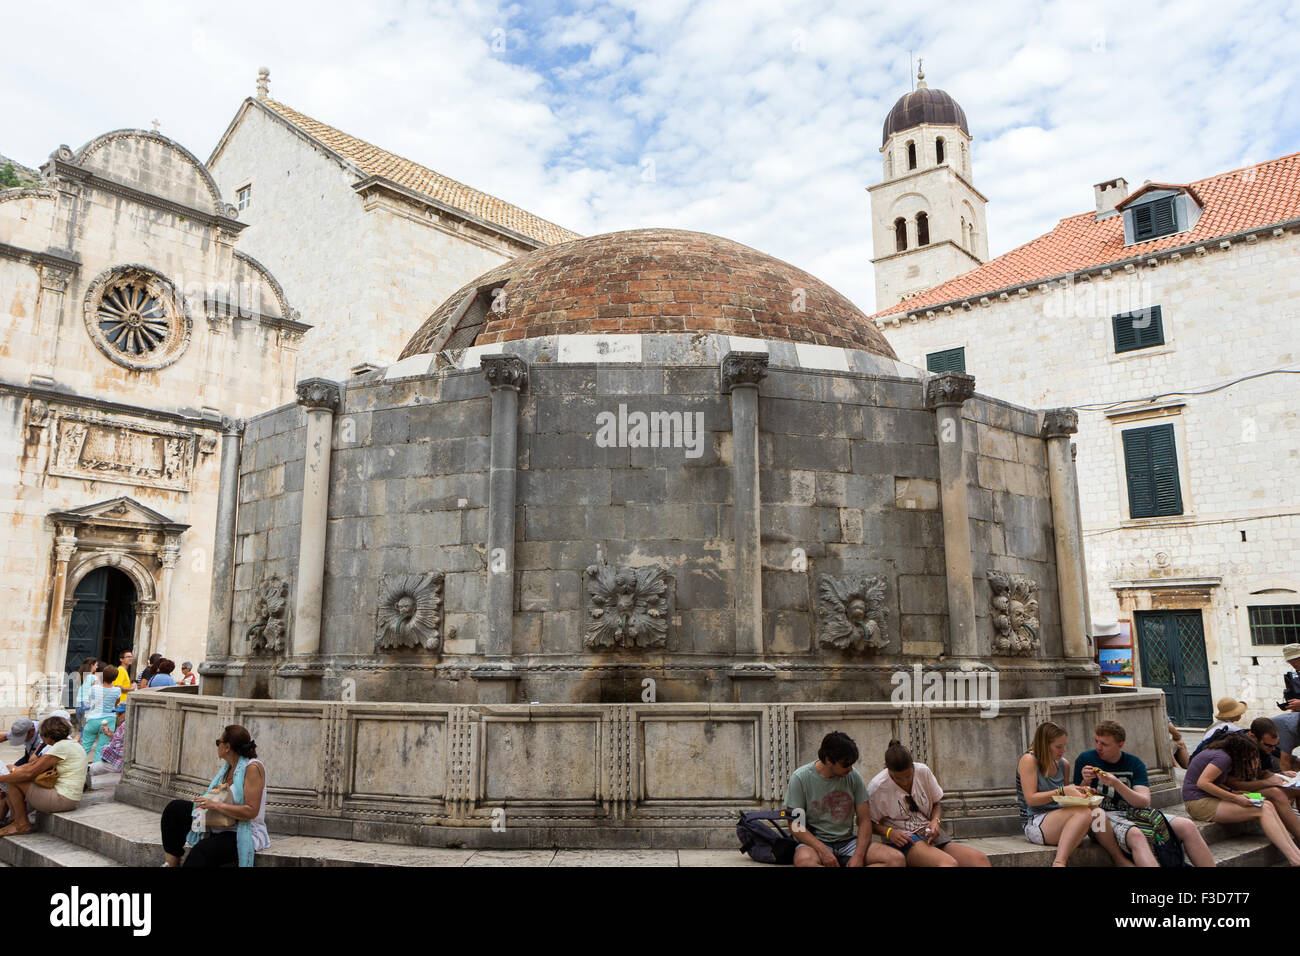 Vue de la grande fontaine d'Onofrio à la vieille ville de Dubrovnik, Croatie. Banque D'Images